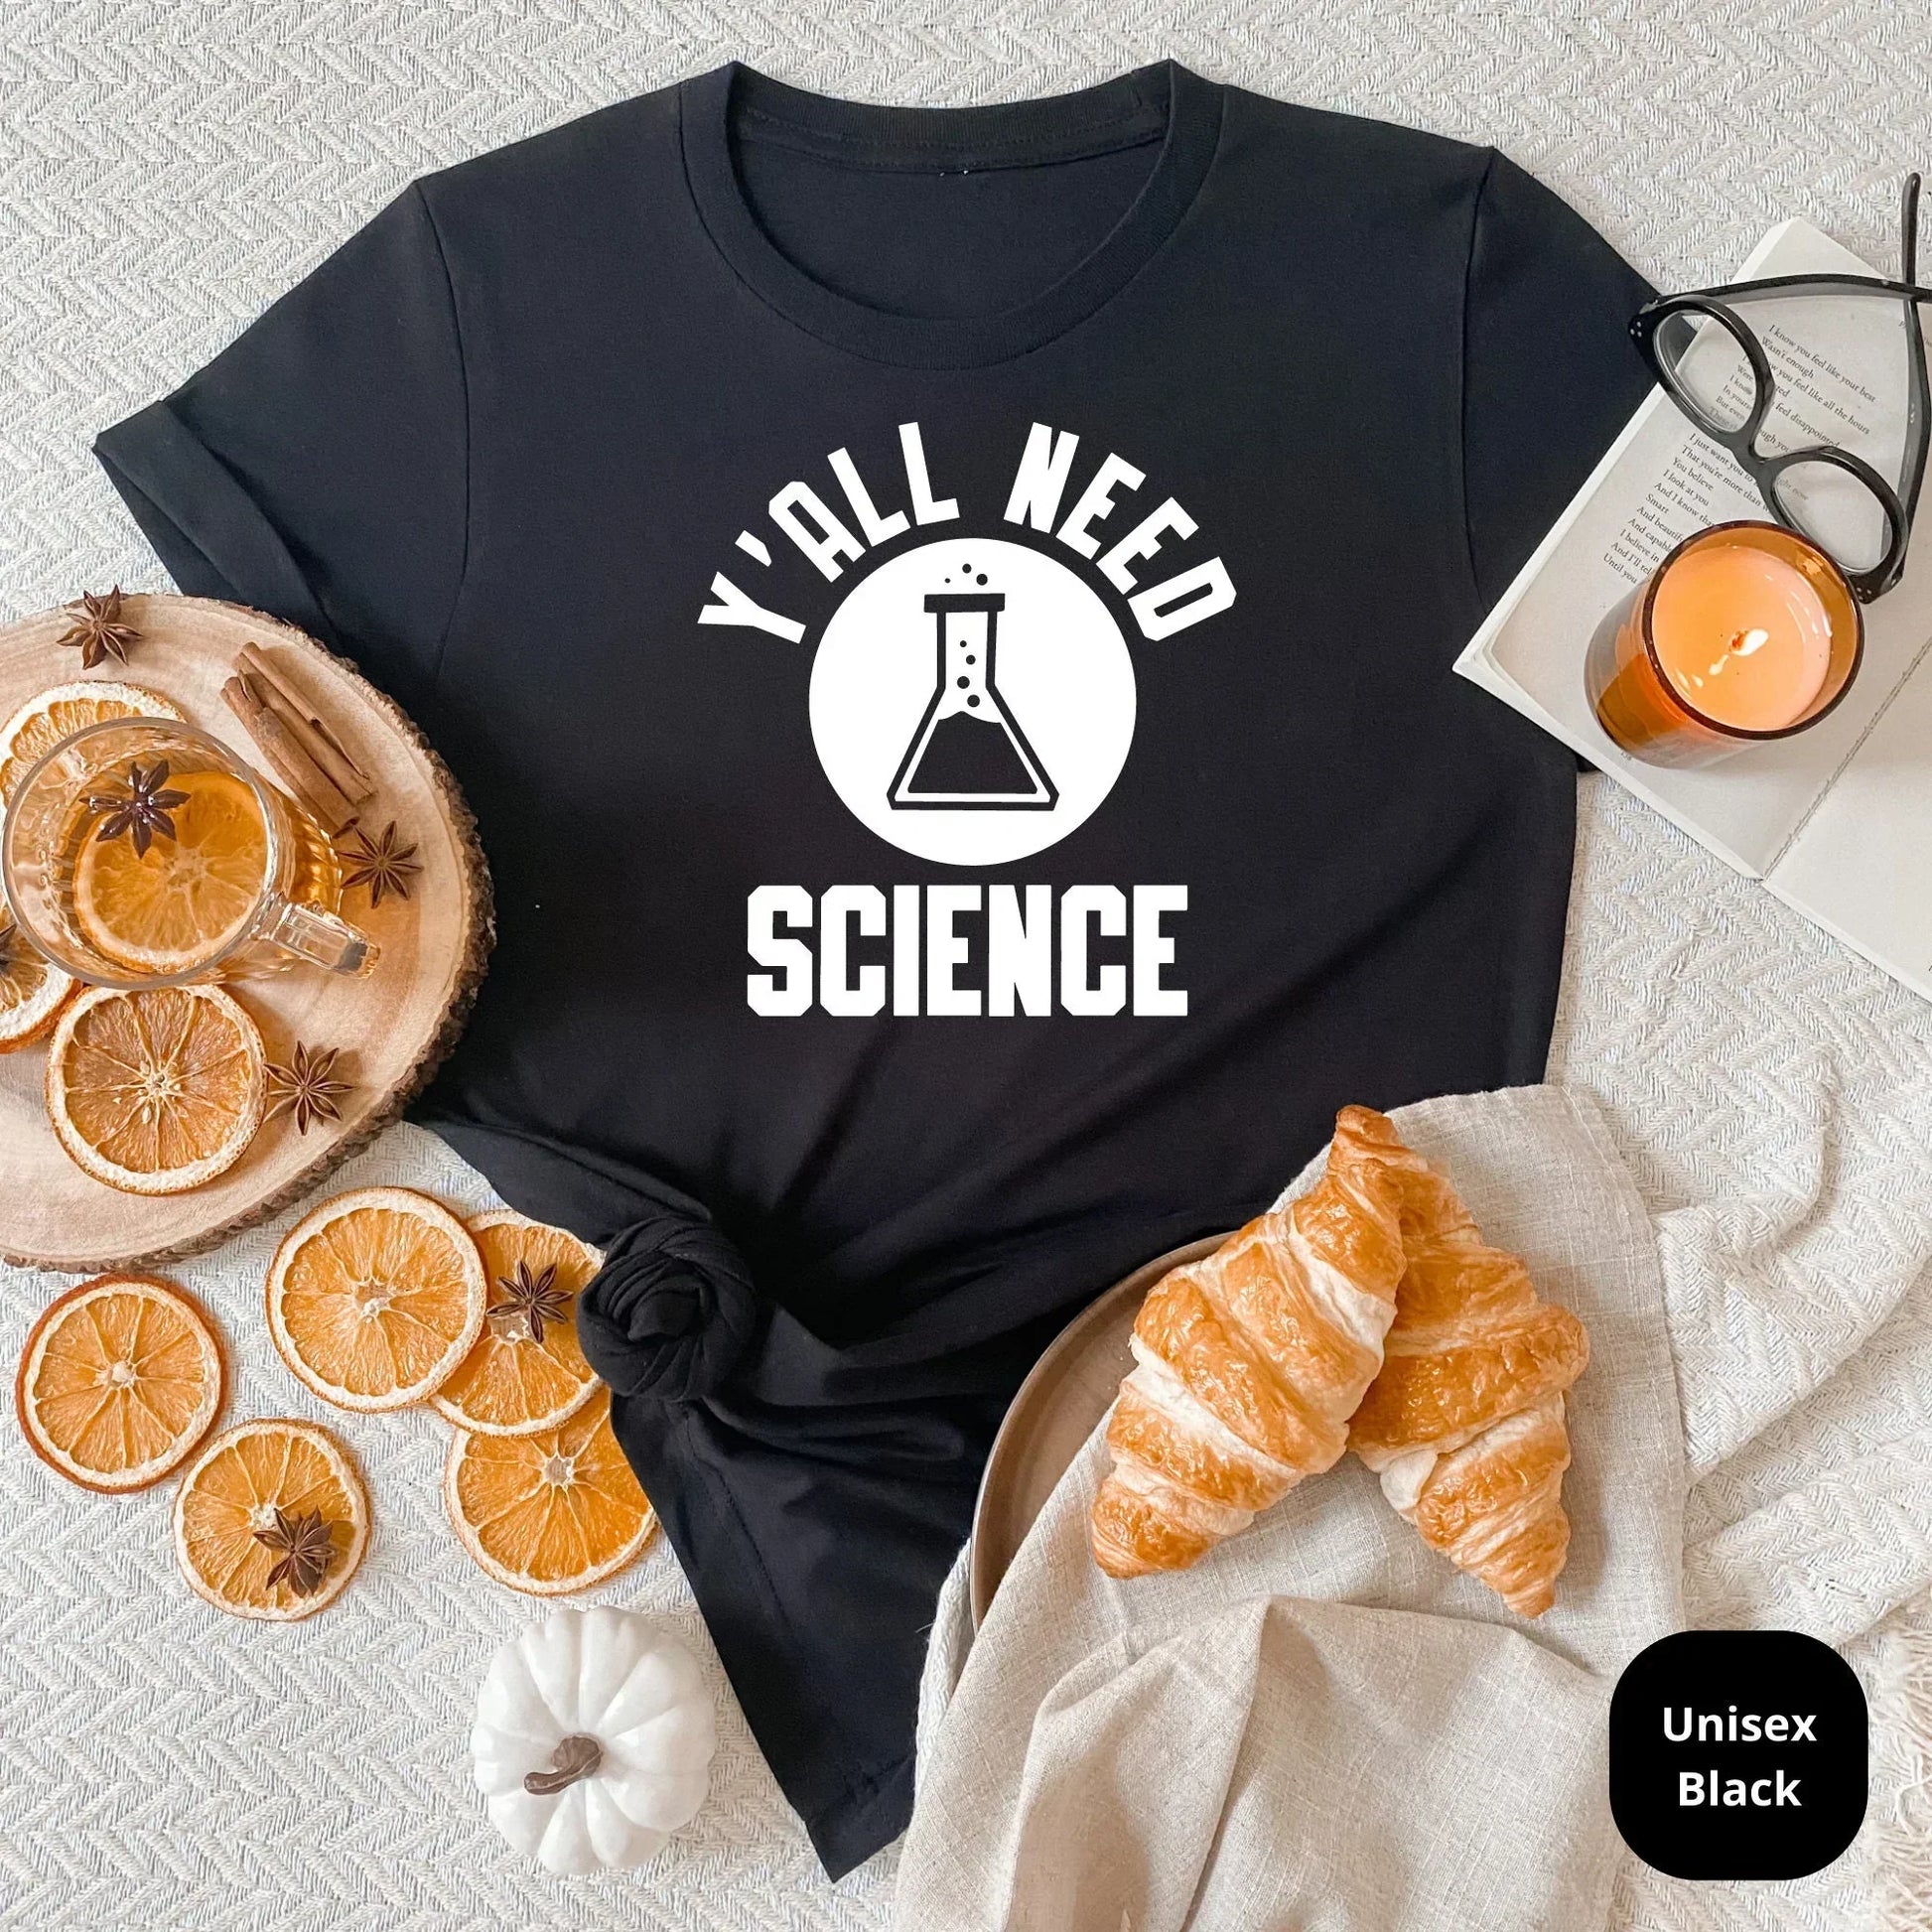 Science Teacher Shirt, Yall Need Science, Teacher Sweatshirt, Gift for Teacher Elements Teacher Shirt, Funny Chemistry Teacher Shirt HMDesignStudioUS